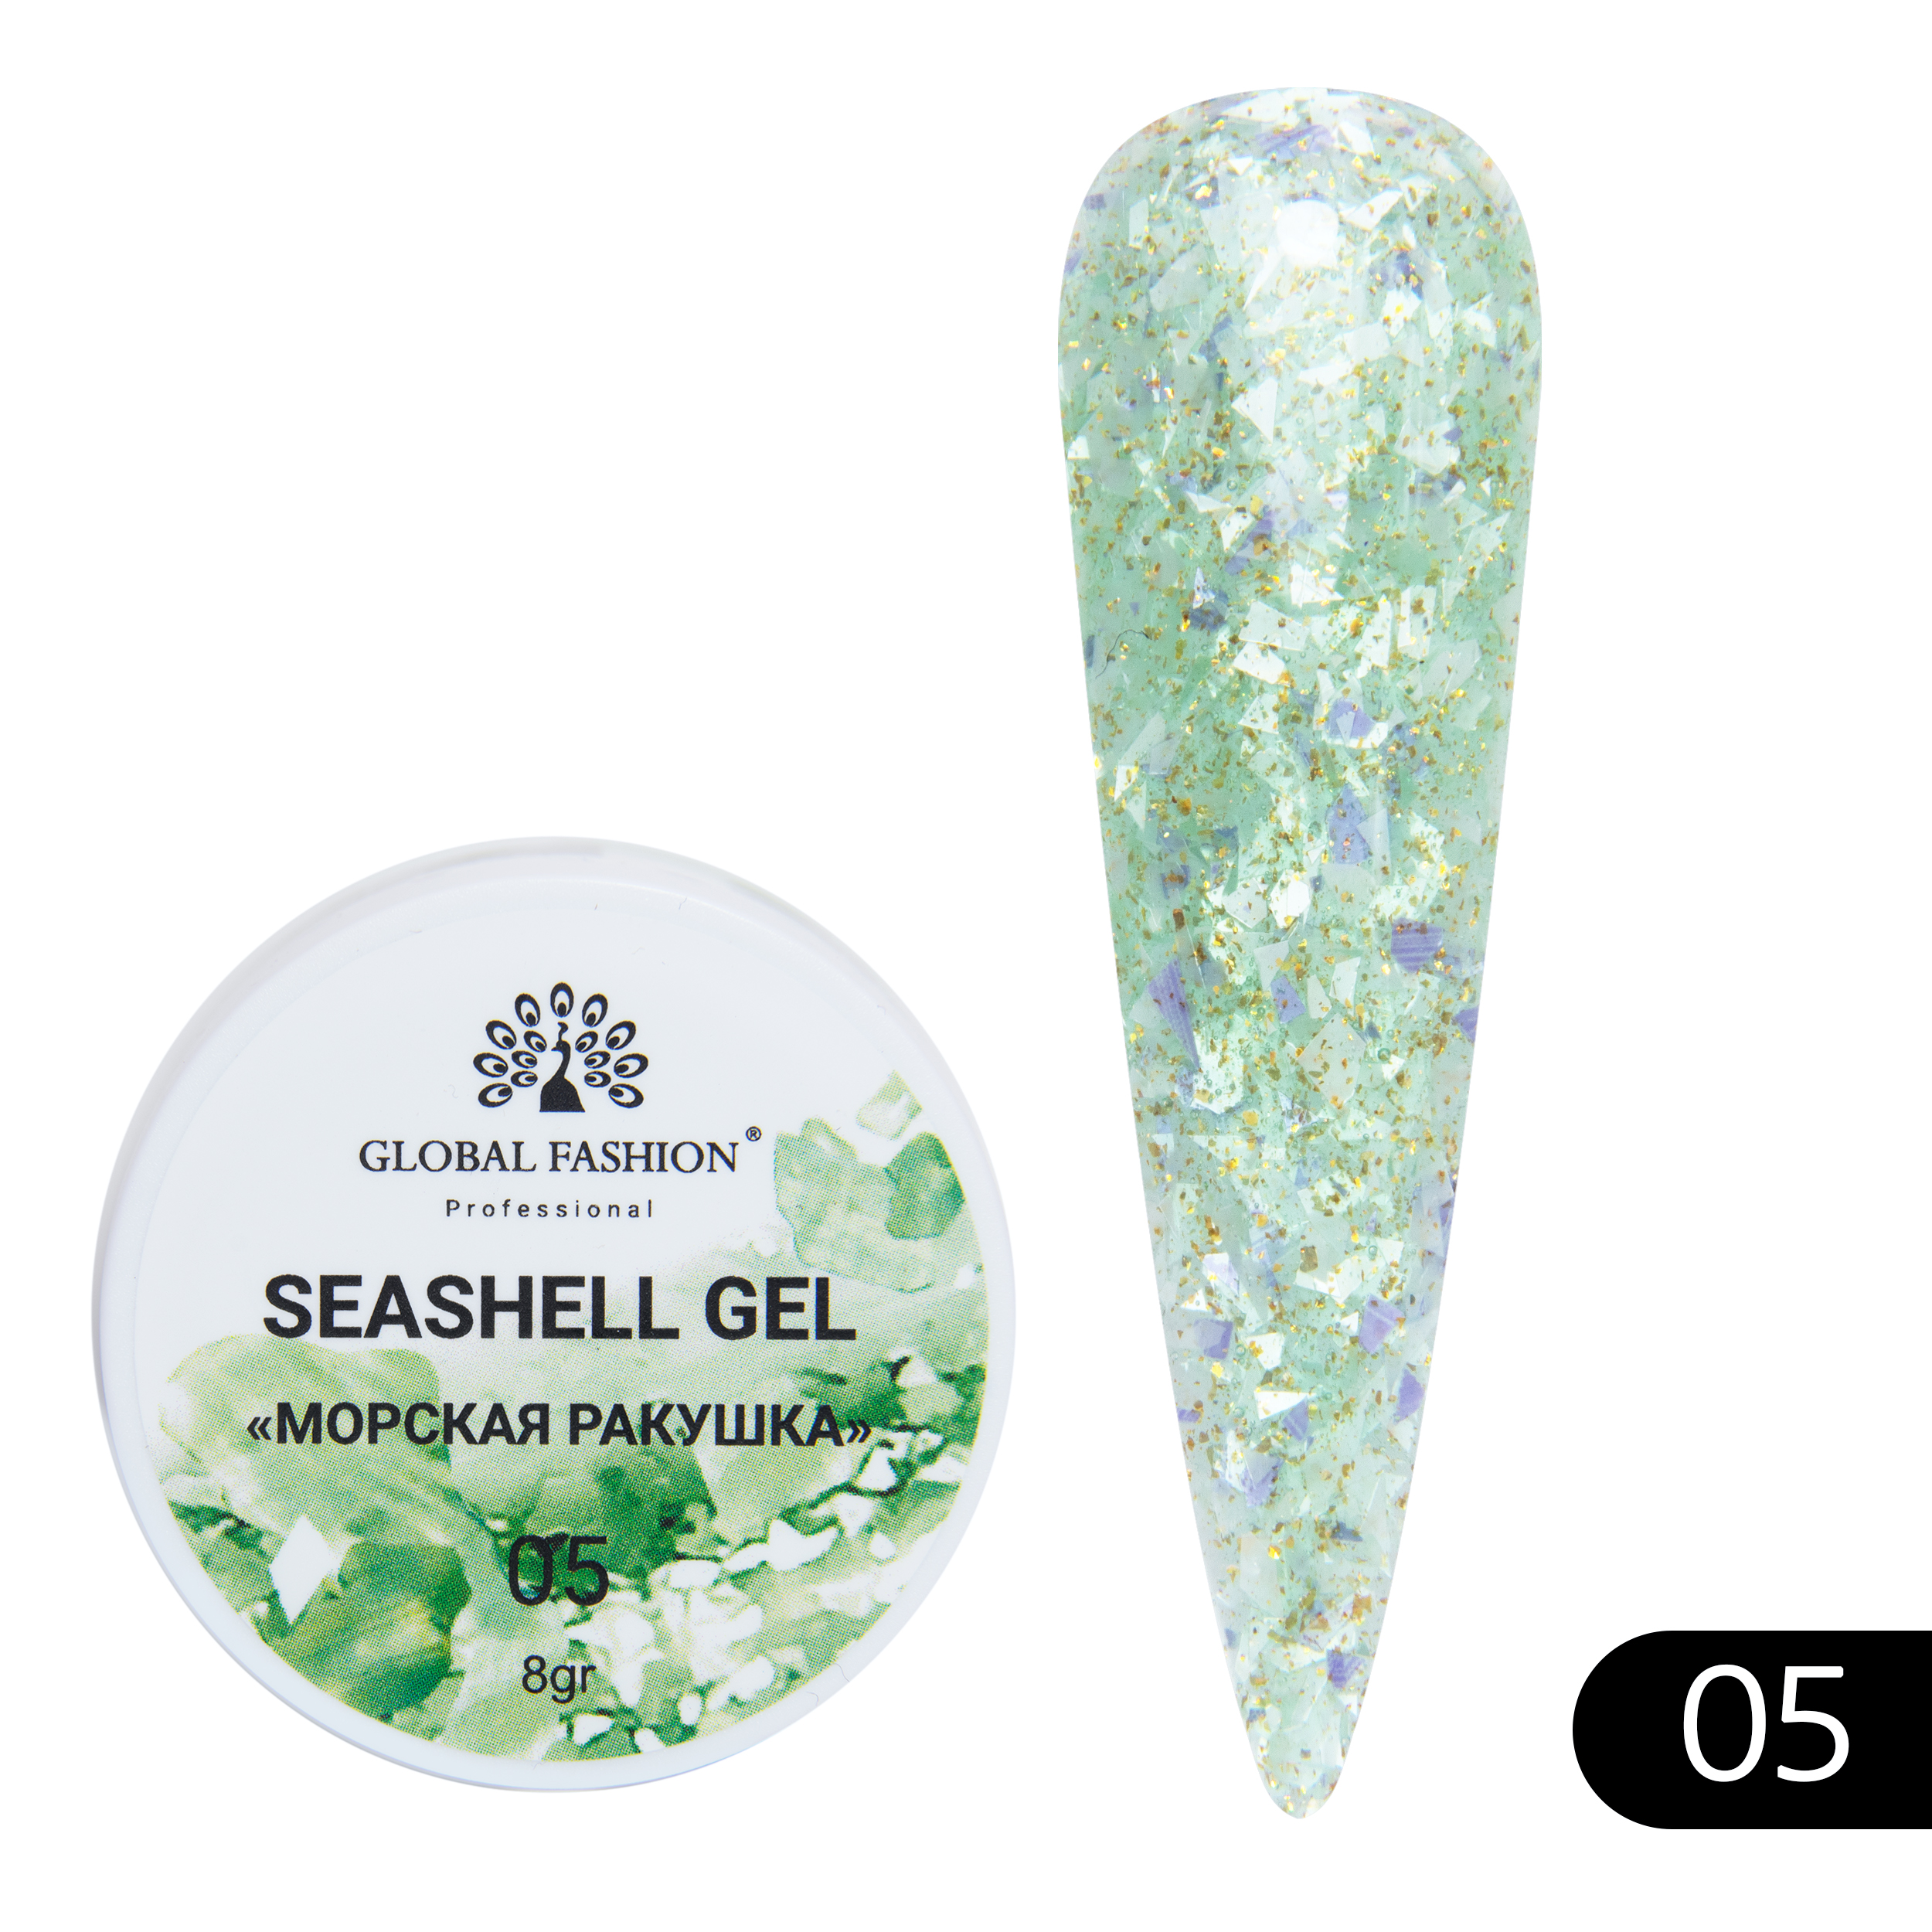 Гель-краска для ногтей Global Fashion с мраморным эффектом ракушки Seashell Gel №05 5 г макароны makfa ракушки 450г